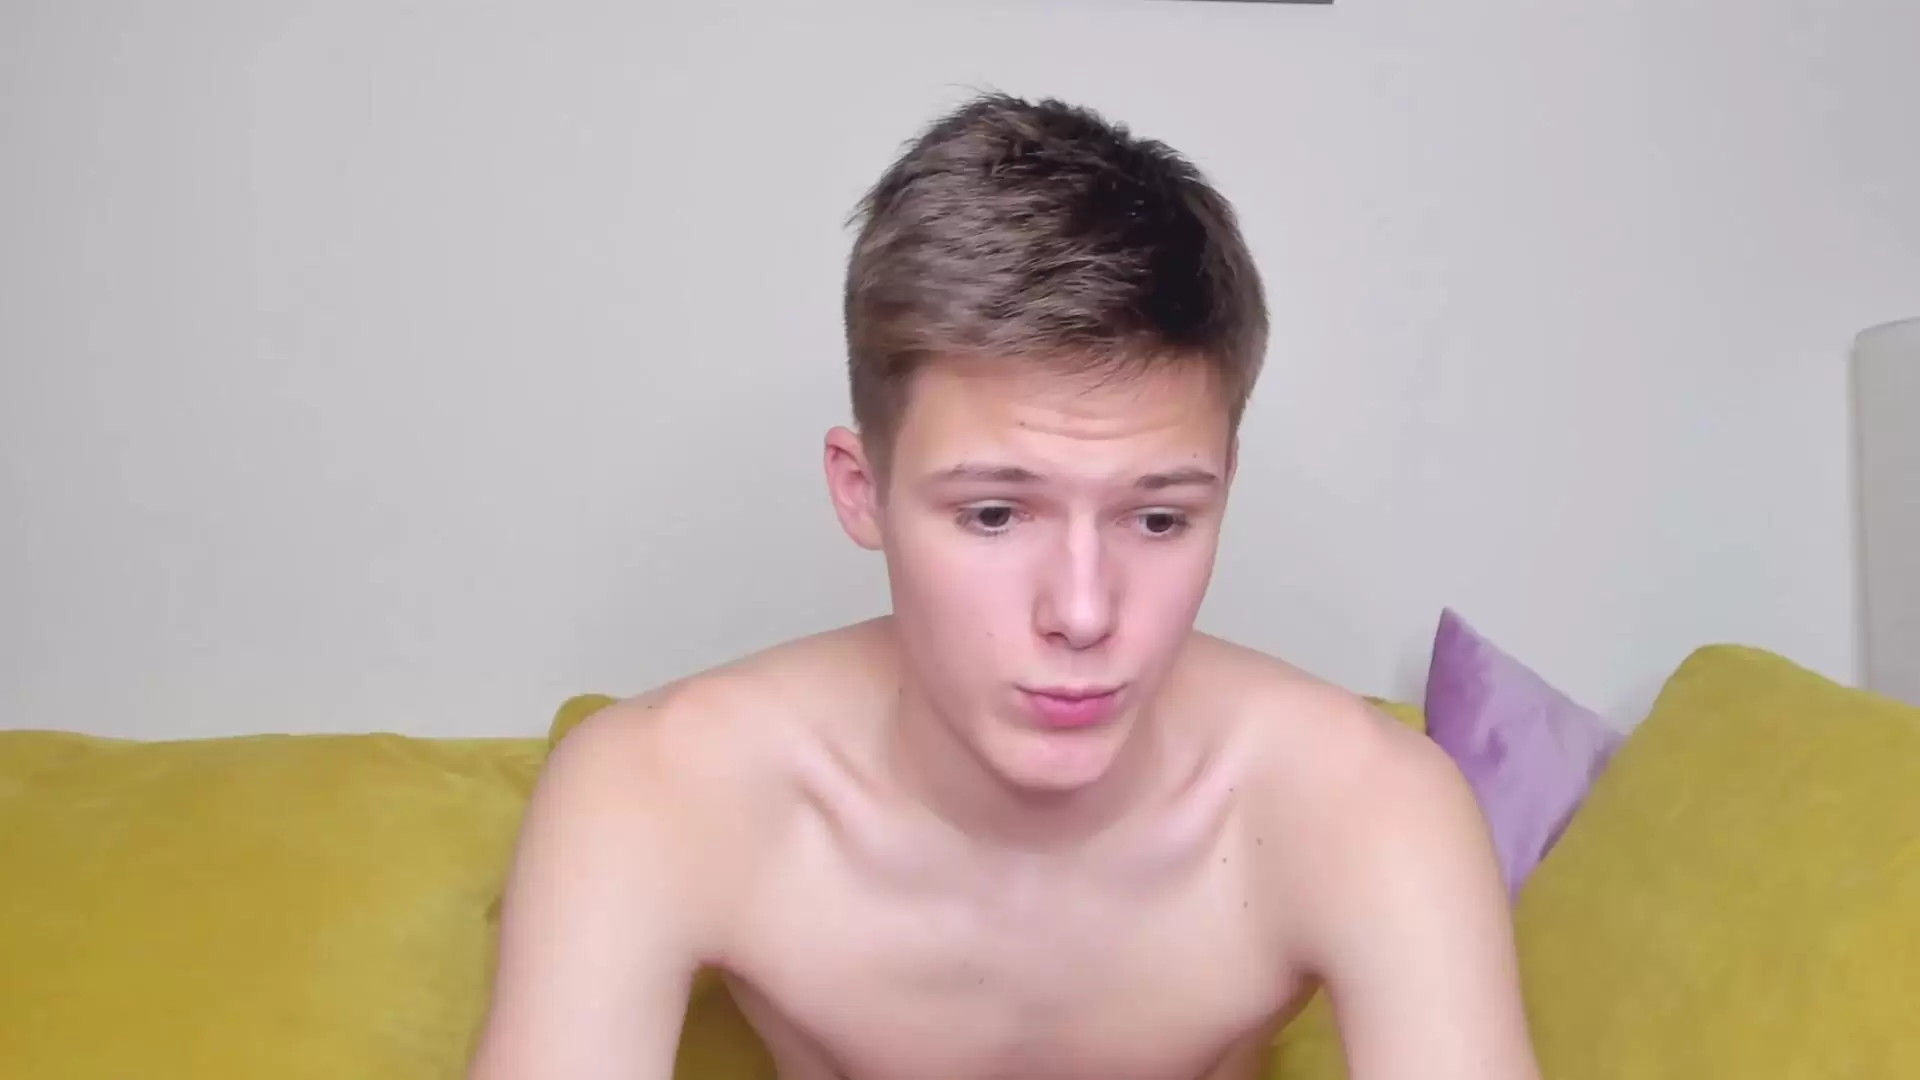 Timytwinkboy - Video veryhard beautiful gay-anal-porn gay-sissy